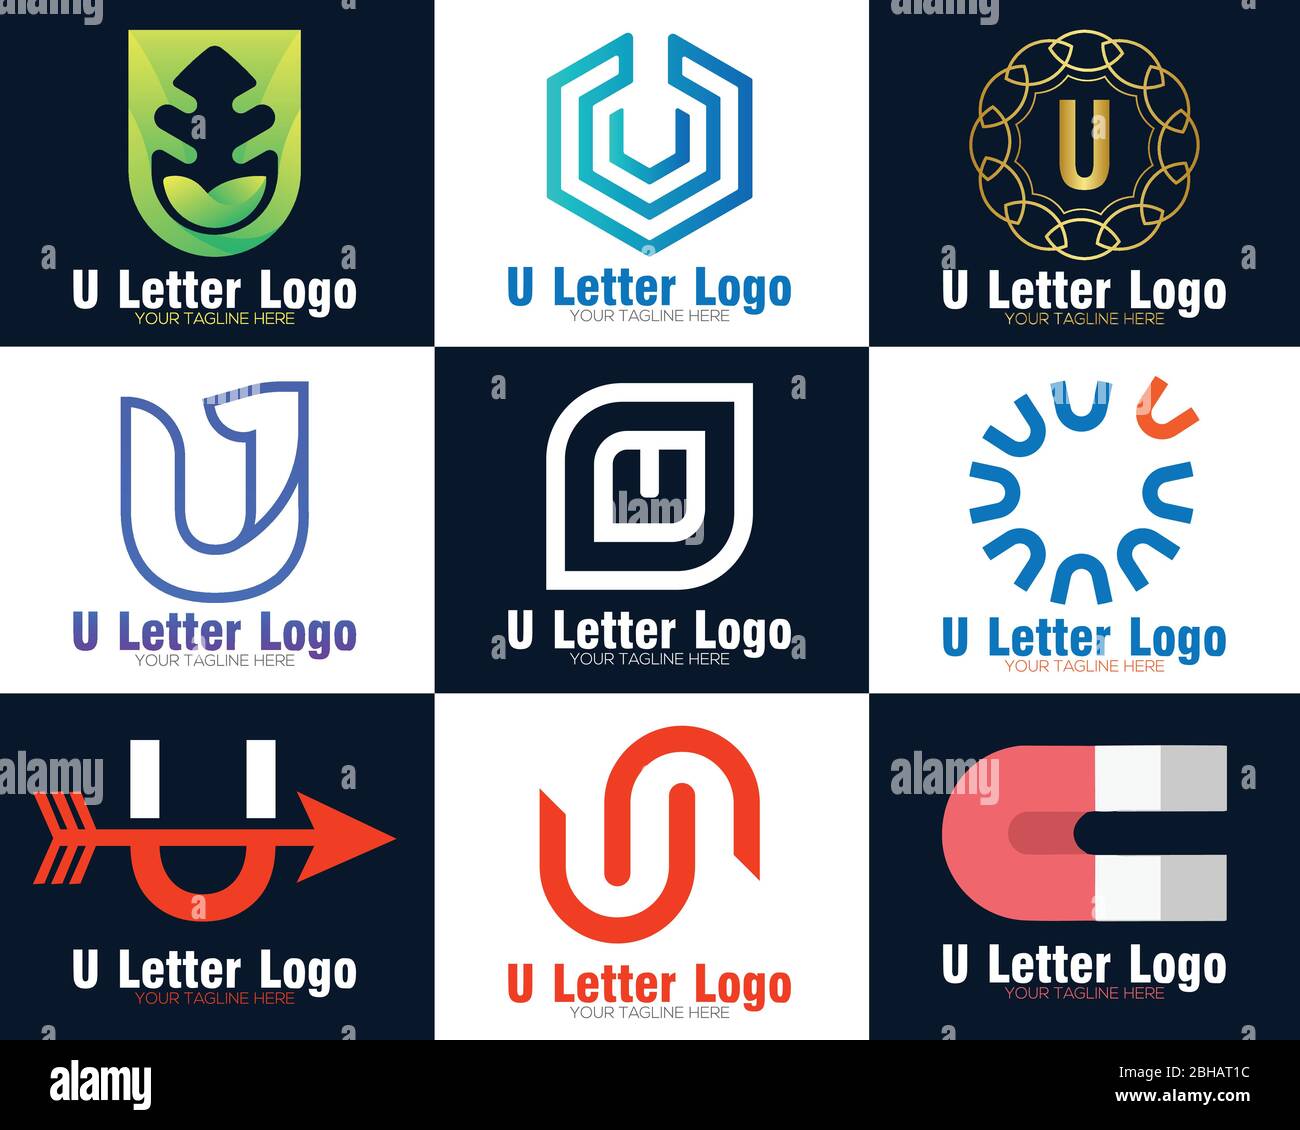 Design moderne et professionnel avec logo lettre U Illustration de Vecteur